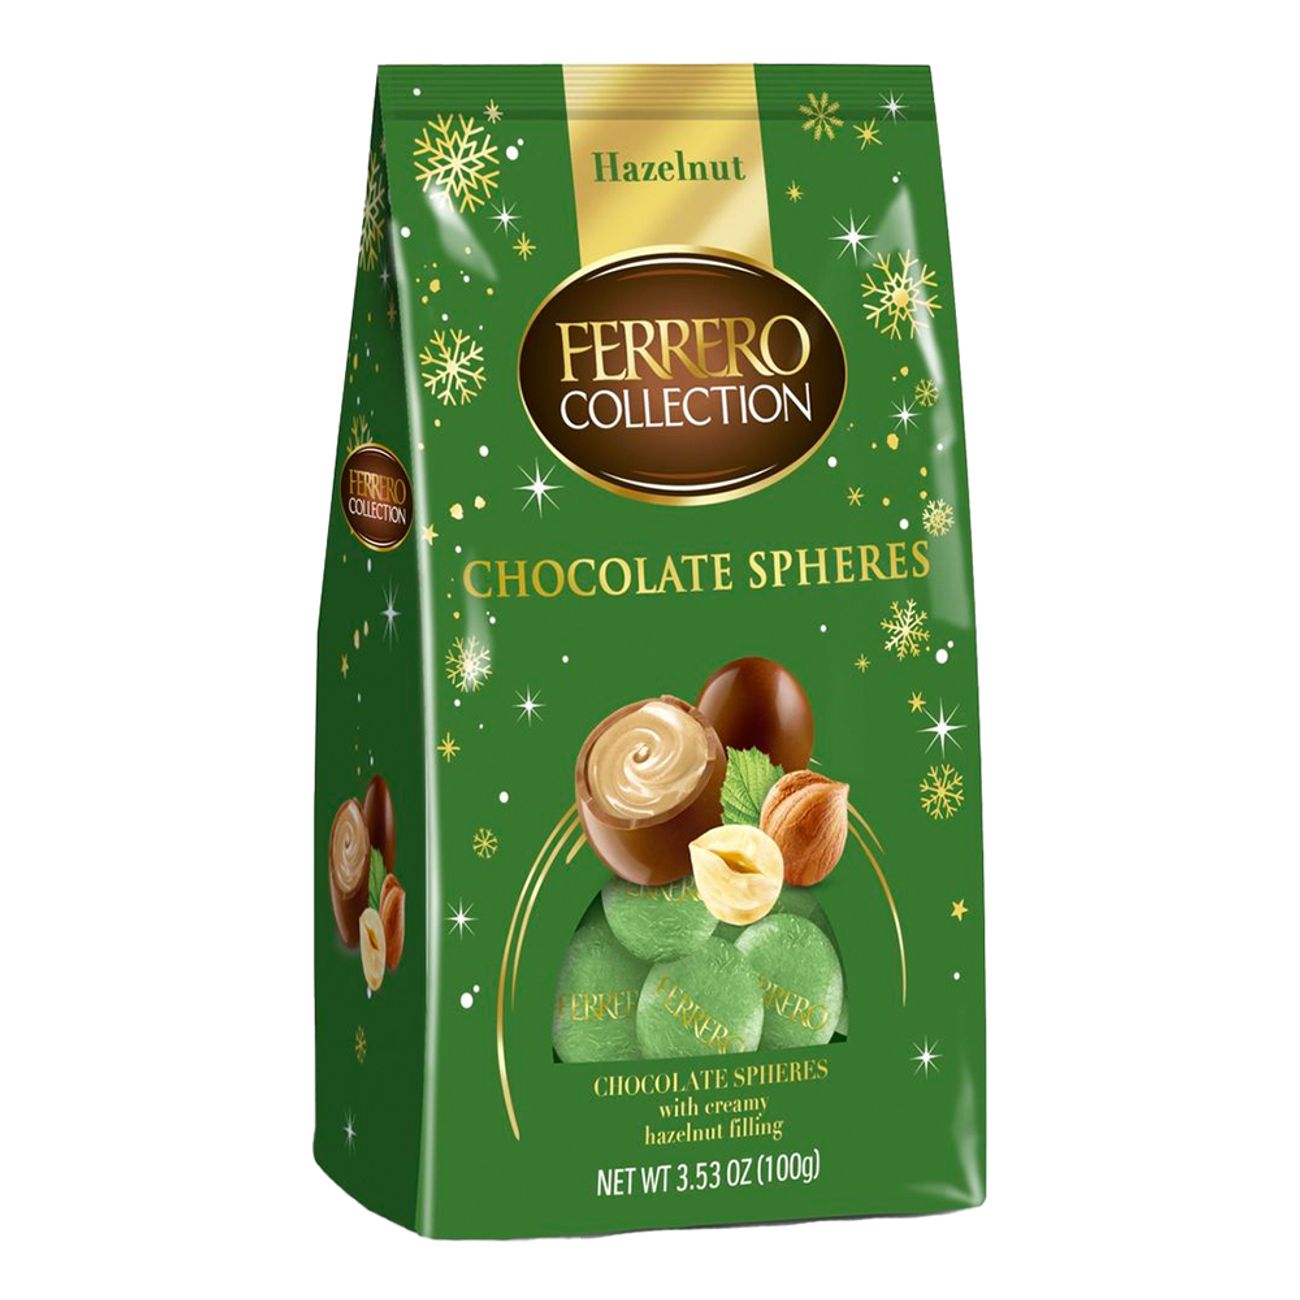 ferrero-collection-chocolate-spheres-hazelnut-99310-1